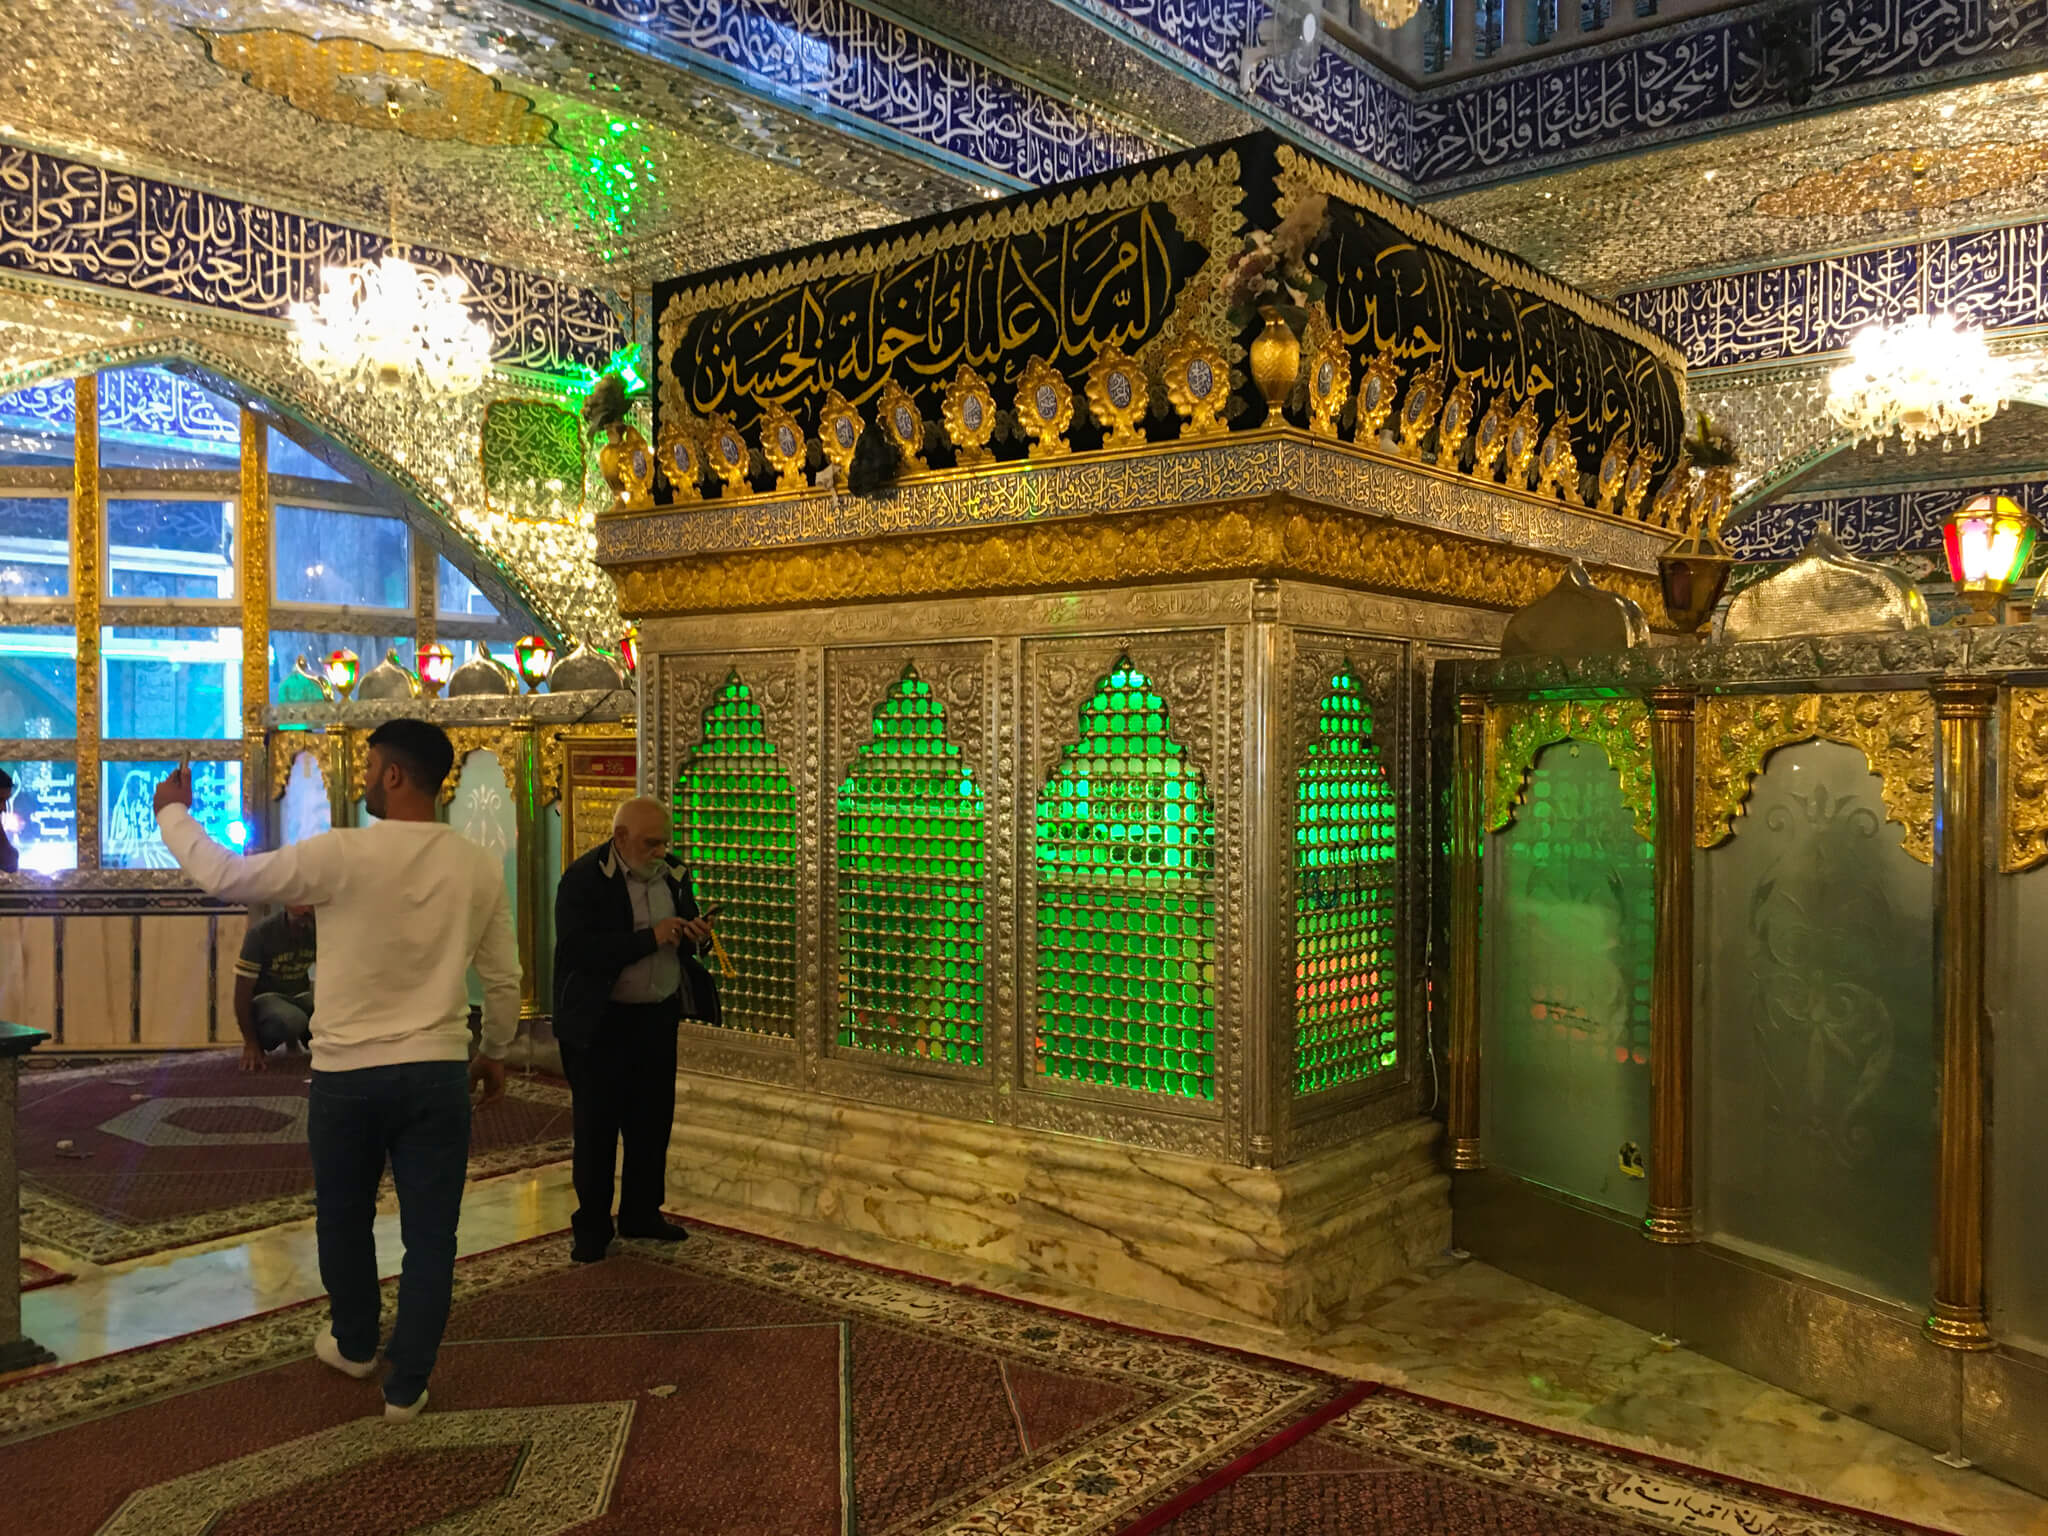 The ornately decorate tomb inside the Sayyida Khawla shrine.